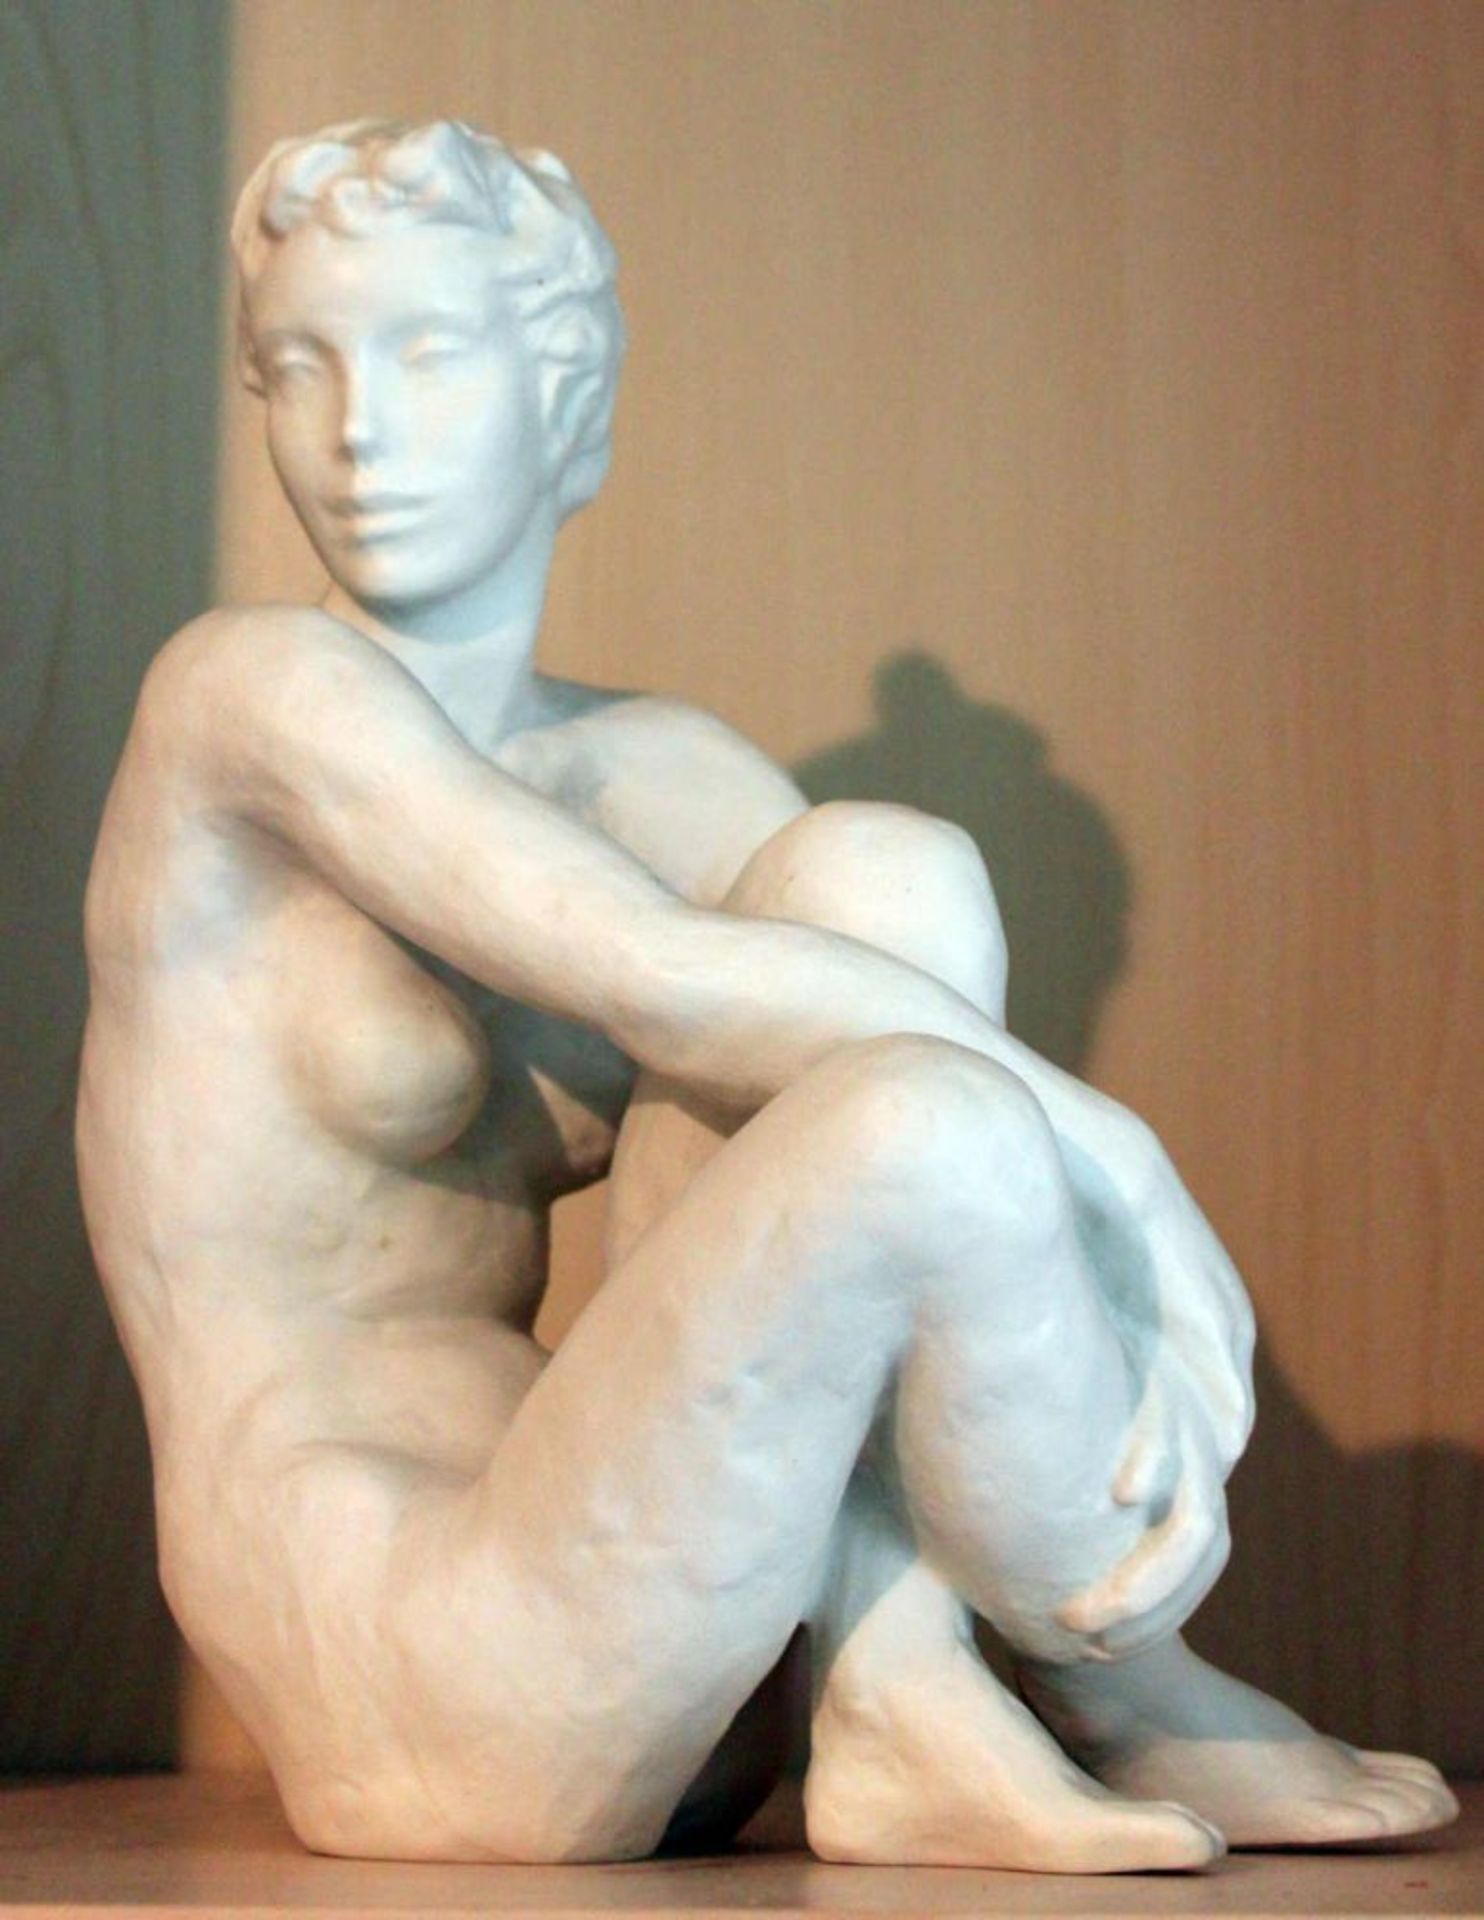 Rosenthal Porzellanfigur, "Die Sitzende", Modell Nr. 1771 LFG, Bisquittporzellan, Höhe ca. 22cm,